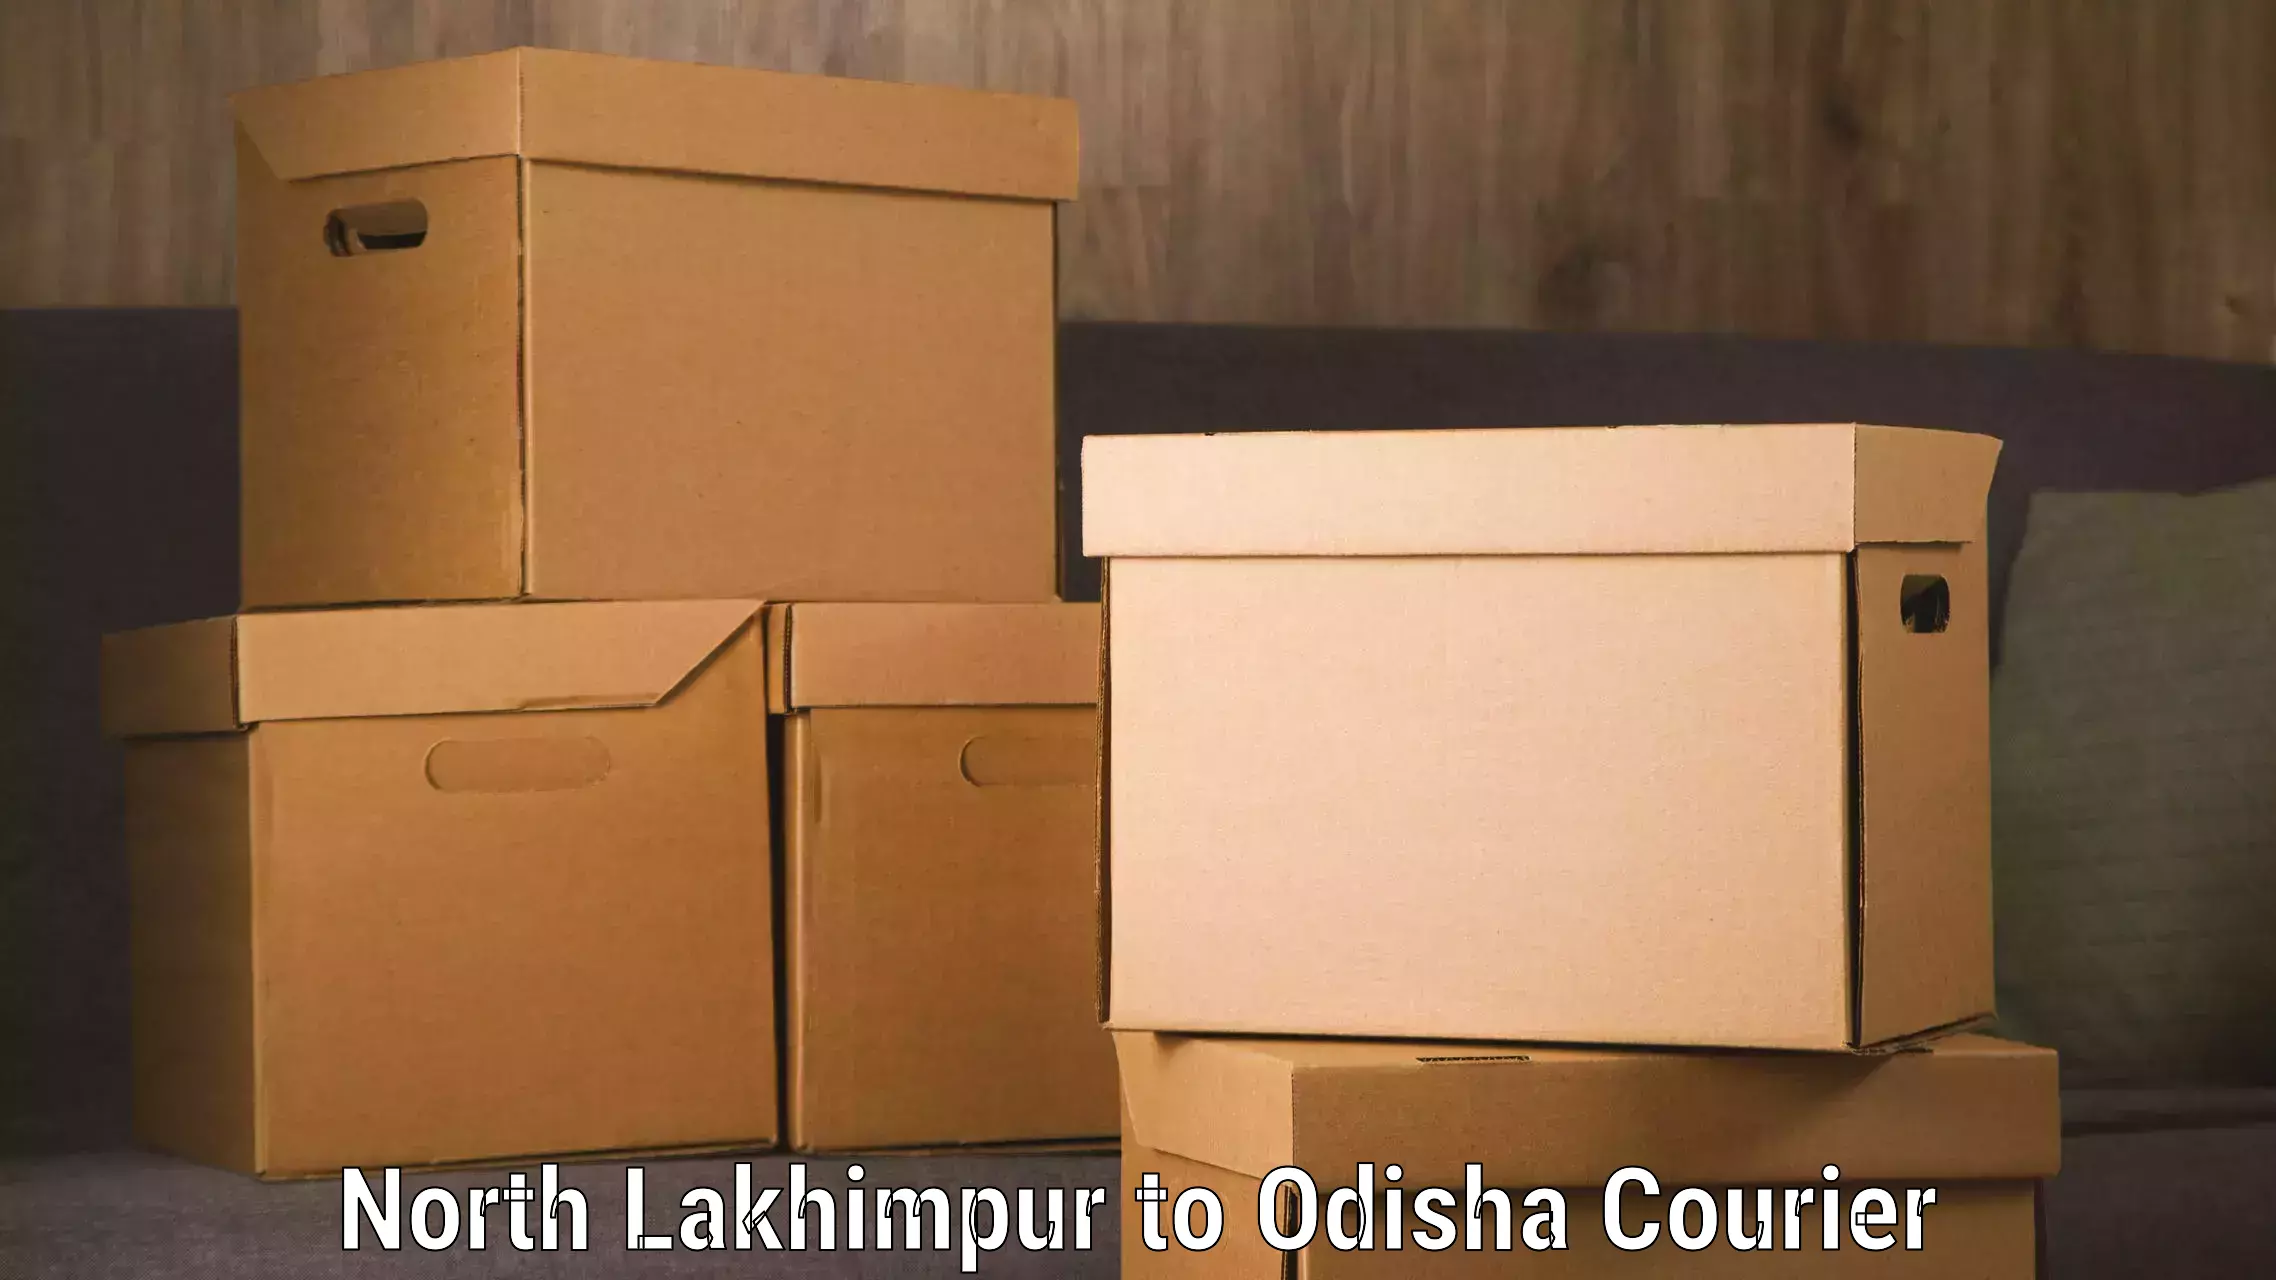 Door-to-door baggage service North Lakhimpur to Duburi